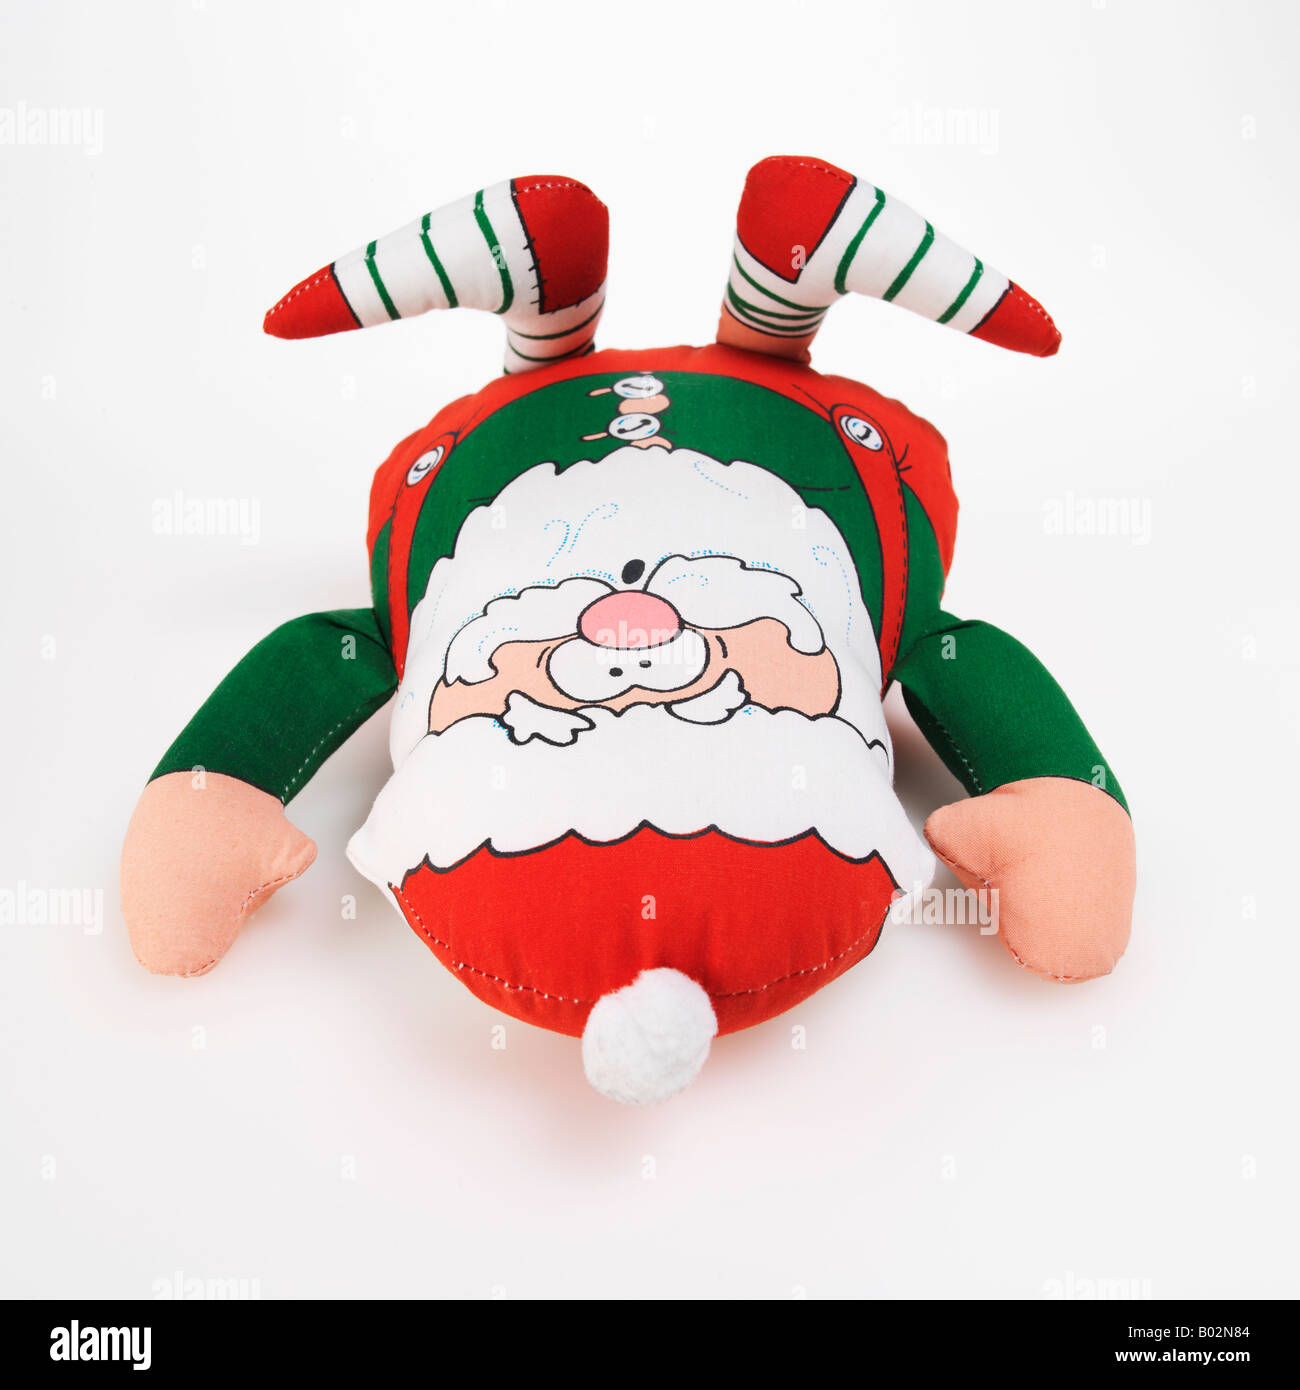 Santa Claus Christmas elf toy on white background Stock Photo - Alamy